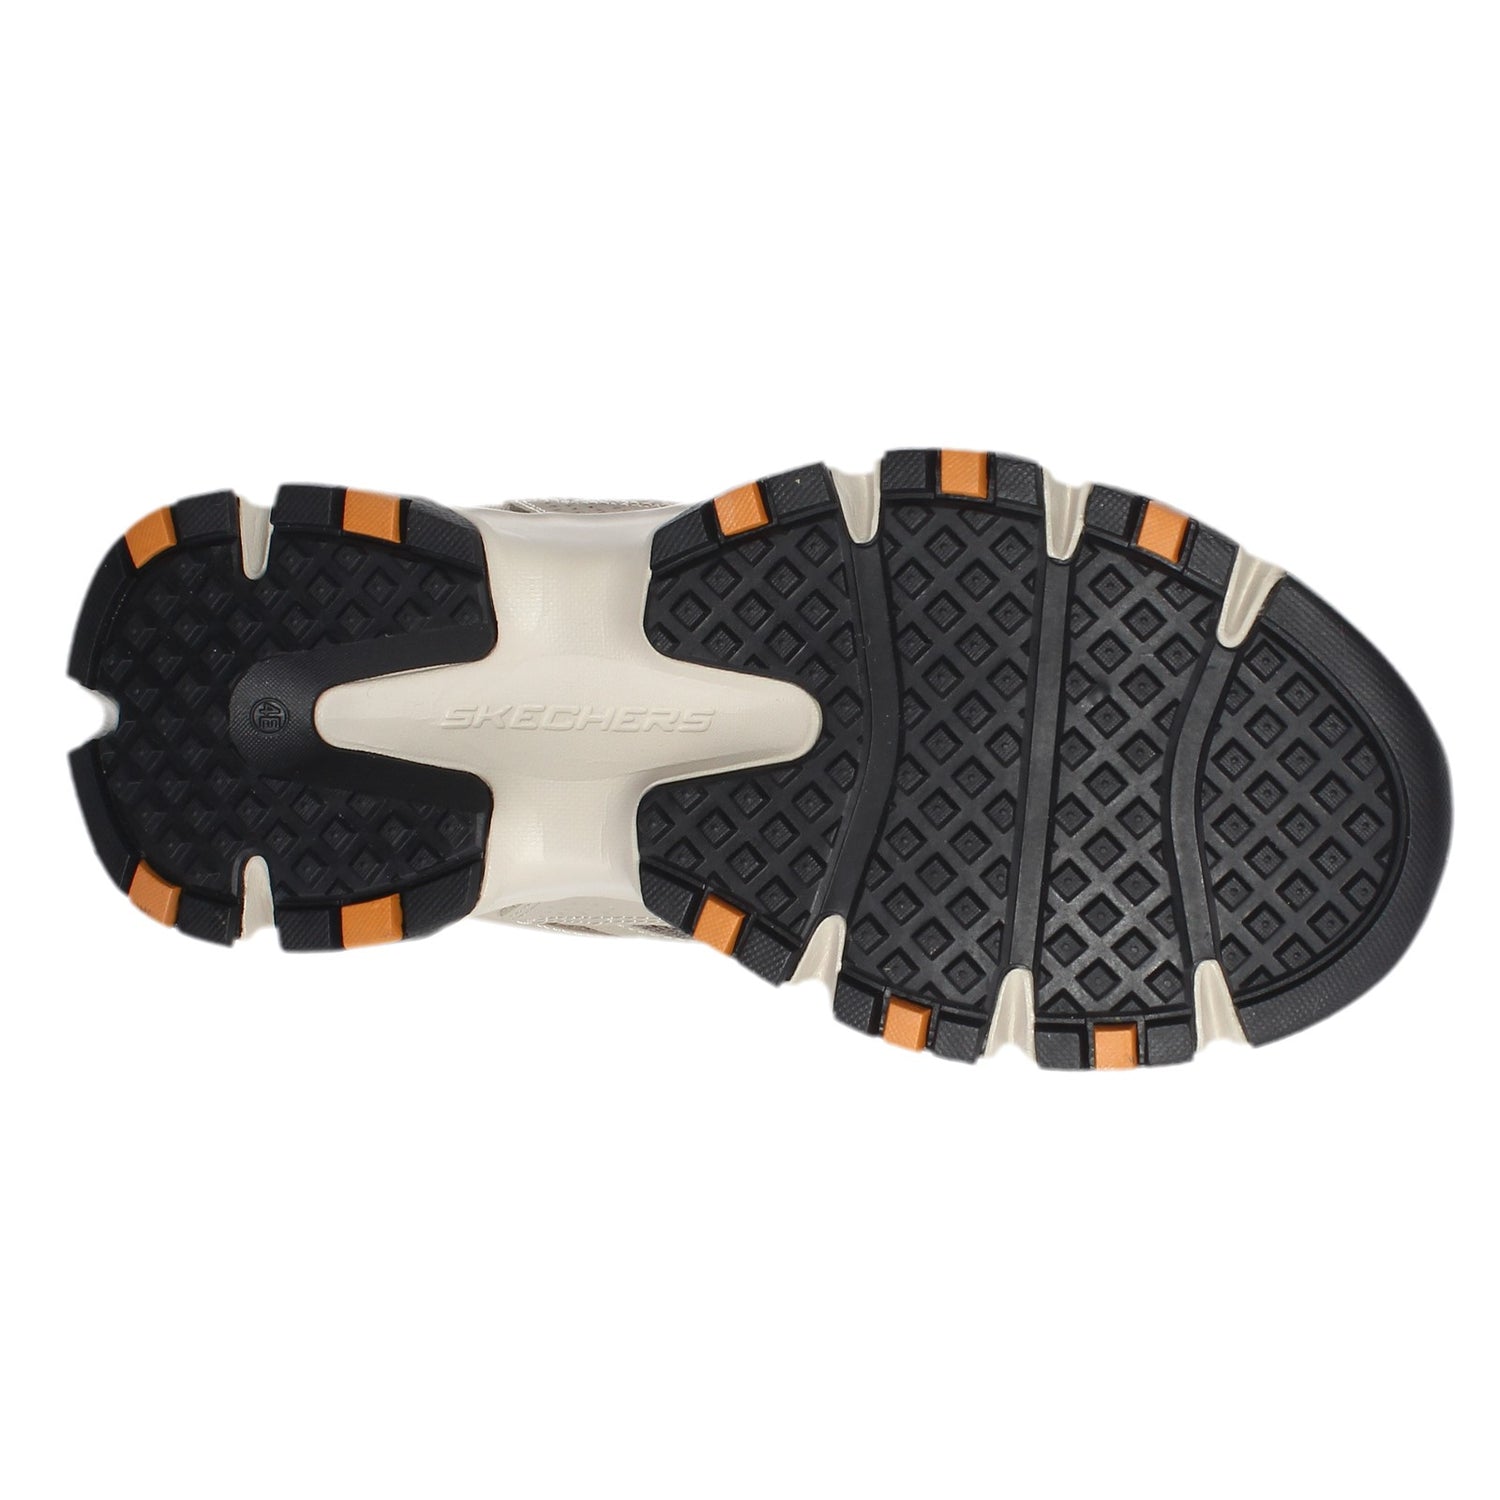 Peltz Shoes  Men's Skechers Relaxed Fit: Crossbar Sneaker - Wide Width Taupe/Black 51885EWW-TPBK